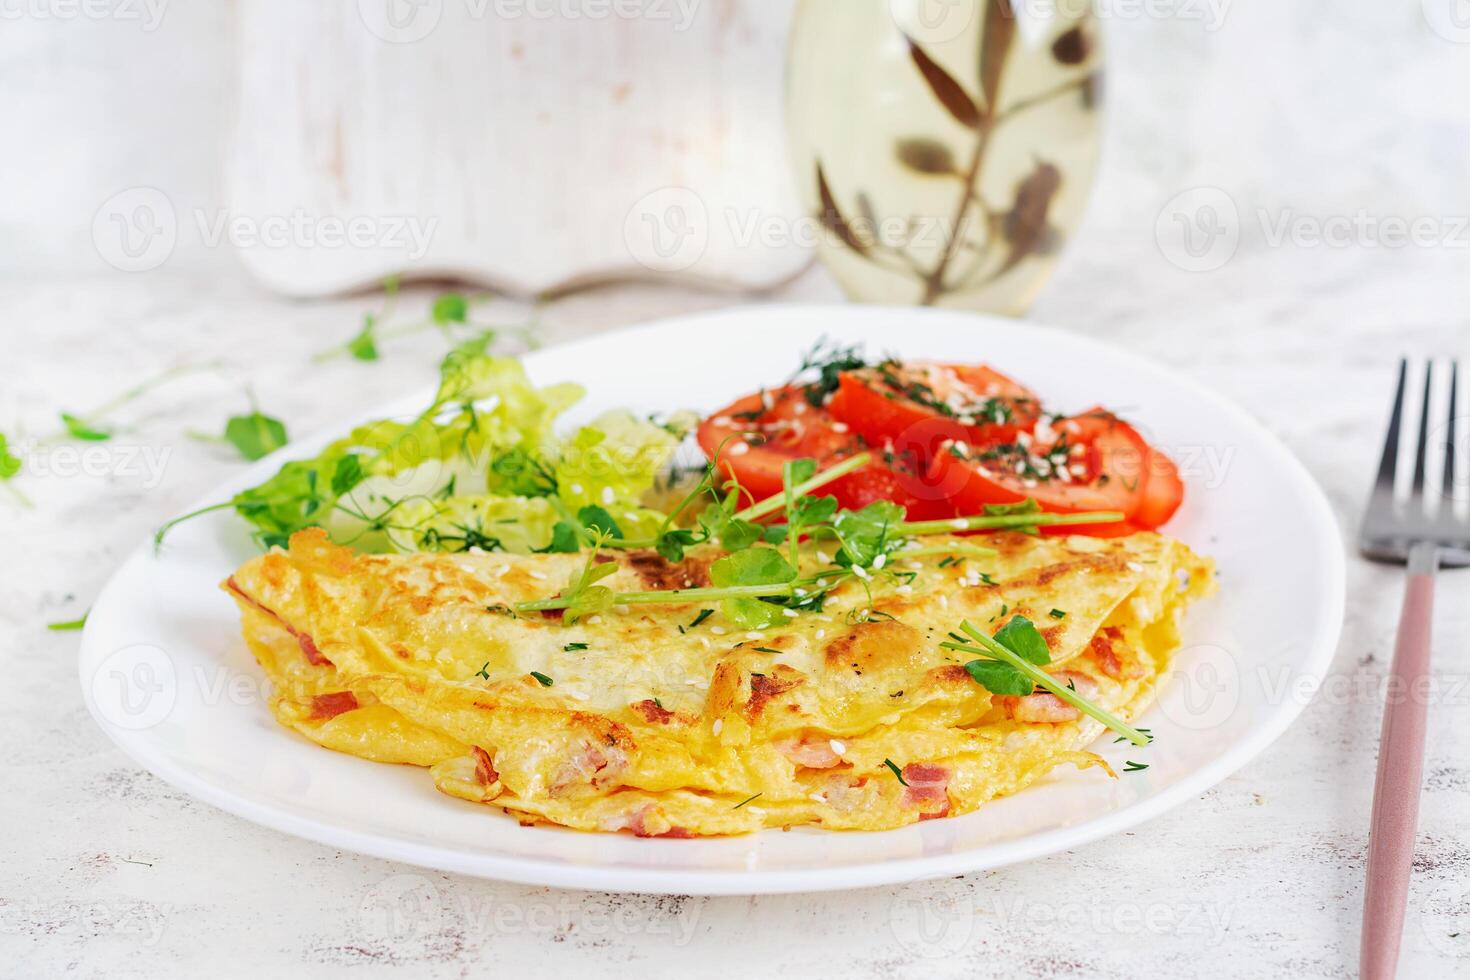 en bonne santé petit-déjeuner.quesadilla avec omelette, Bacon et tomates salade. céto, cétogène déjeuner. photo